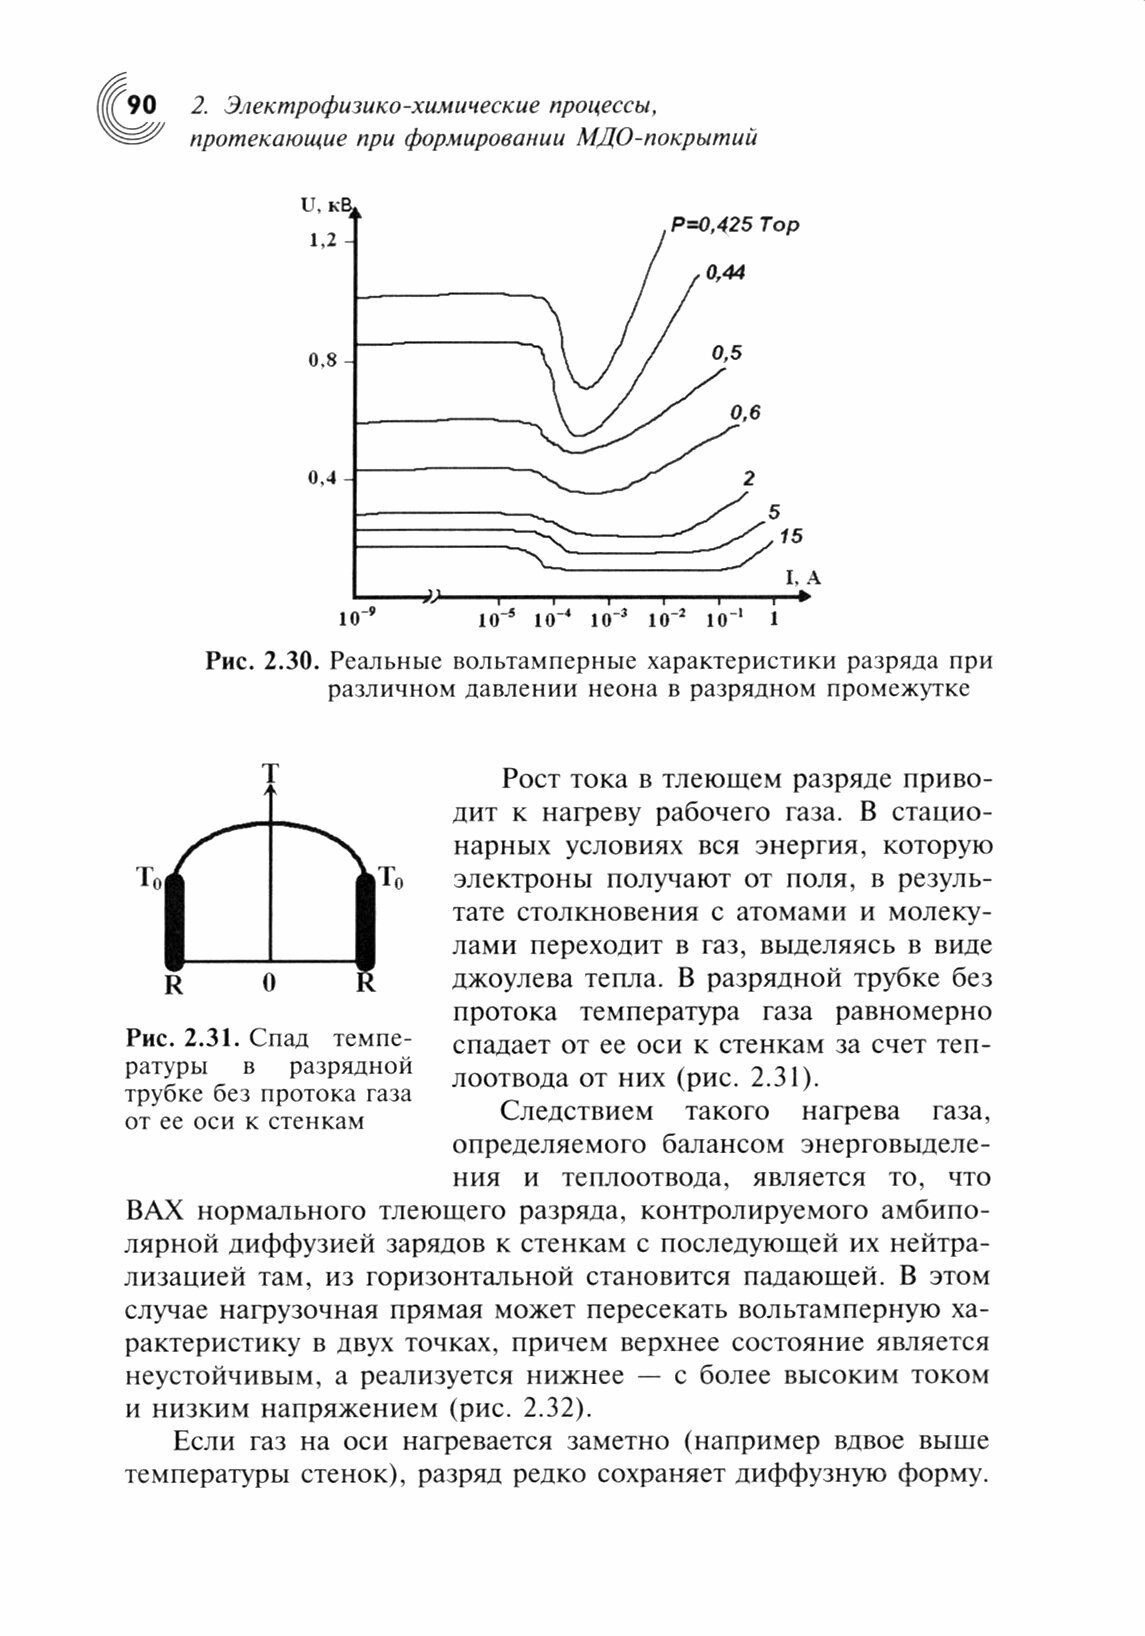 Плазменно-электролитическое модифицирование поверхности металлов и сплавов. В 2-х томах. Том II - фото №5